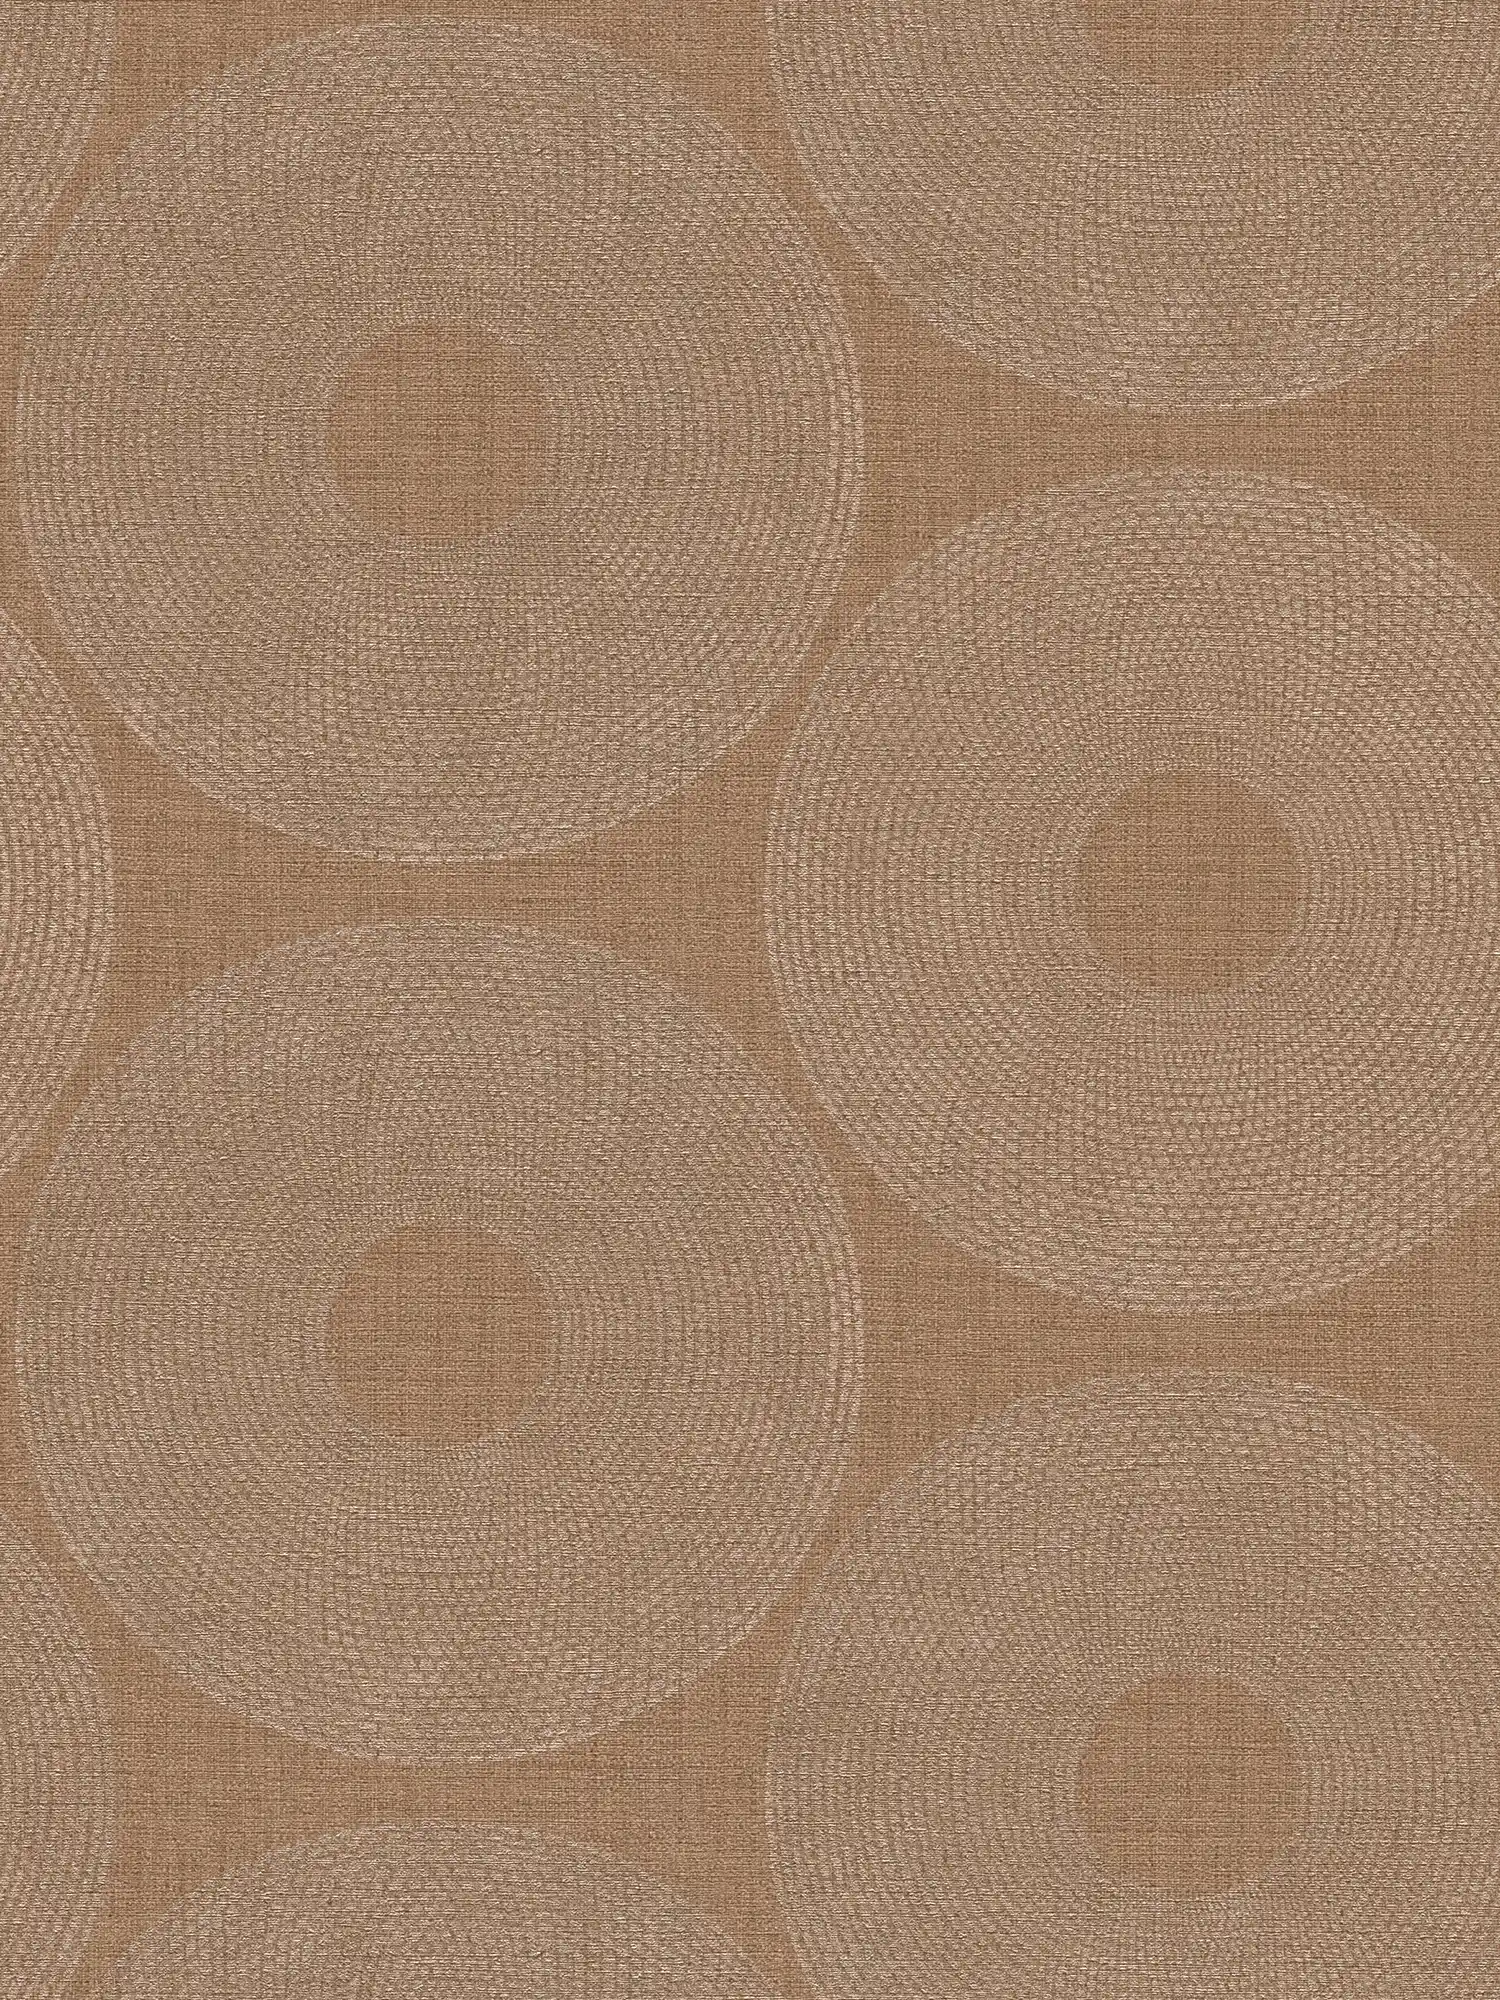         Papel pintado metálico círculos con diseño de estructura - marrón
    